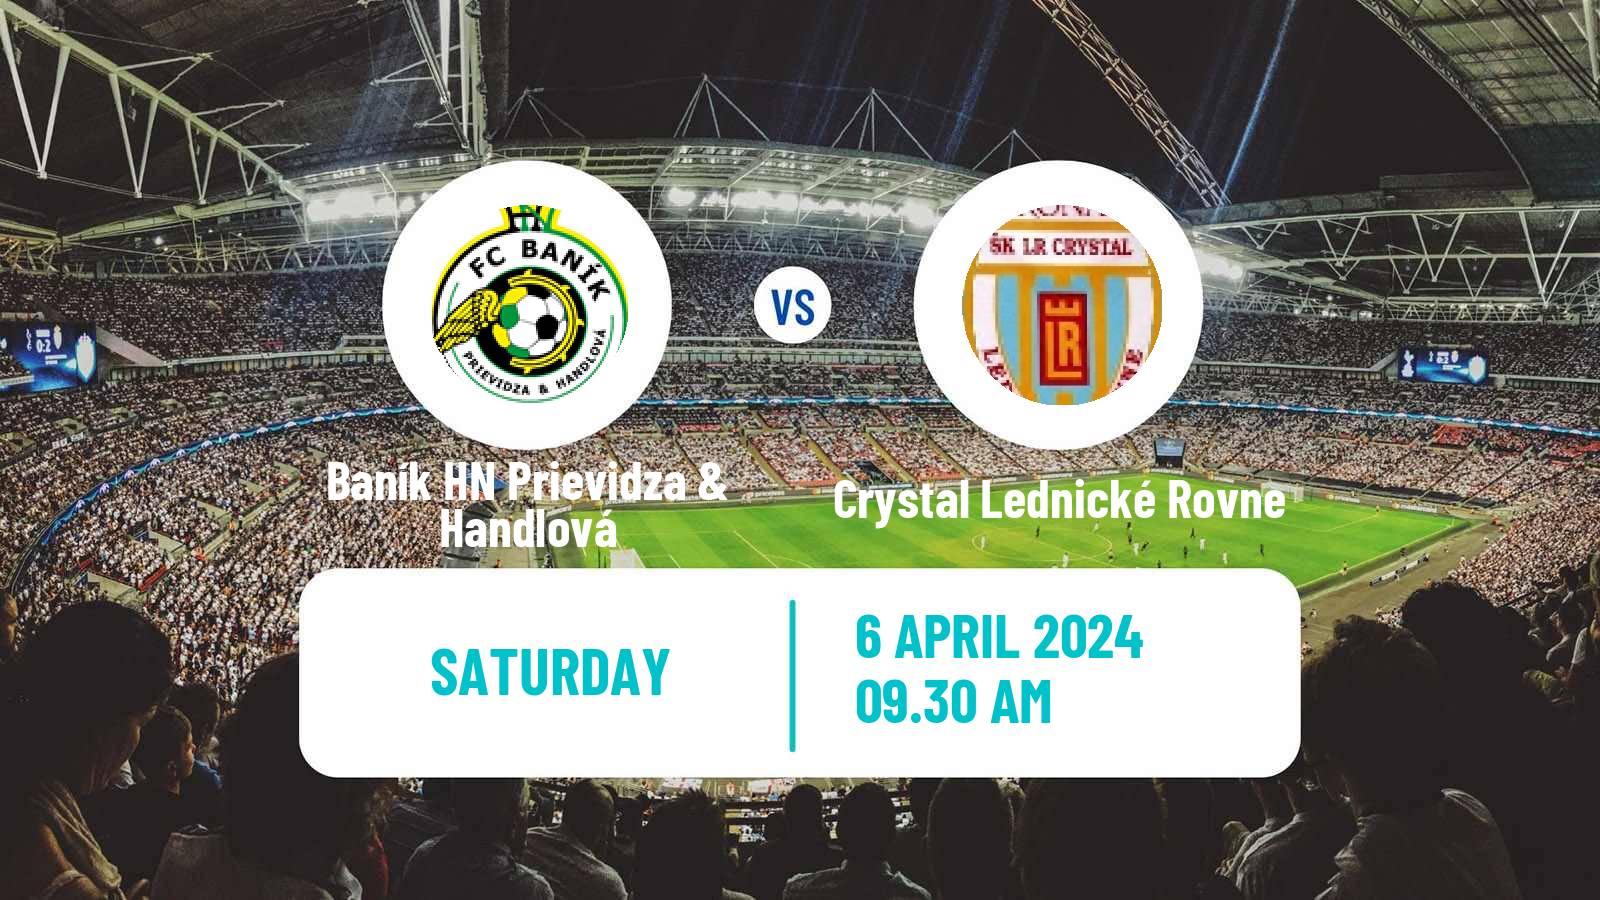 Soccer Slovak 4 Liga West Baník HN Prievidza & Handlová - Crystal Lednické Rovne